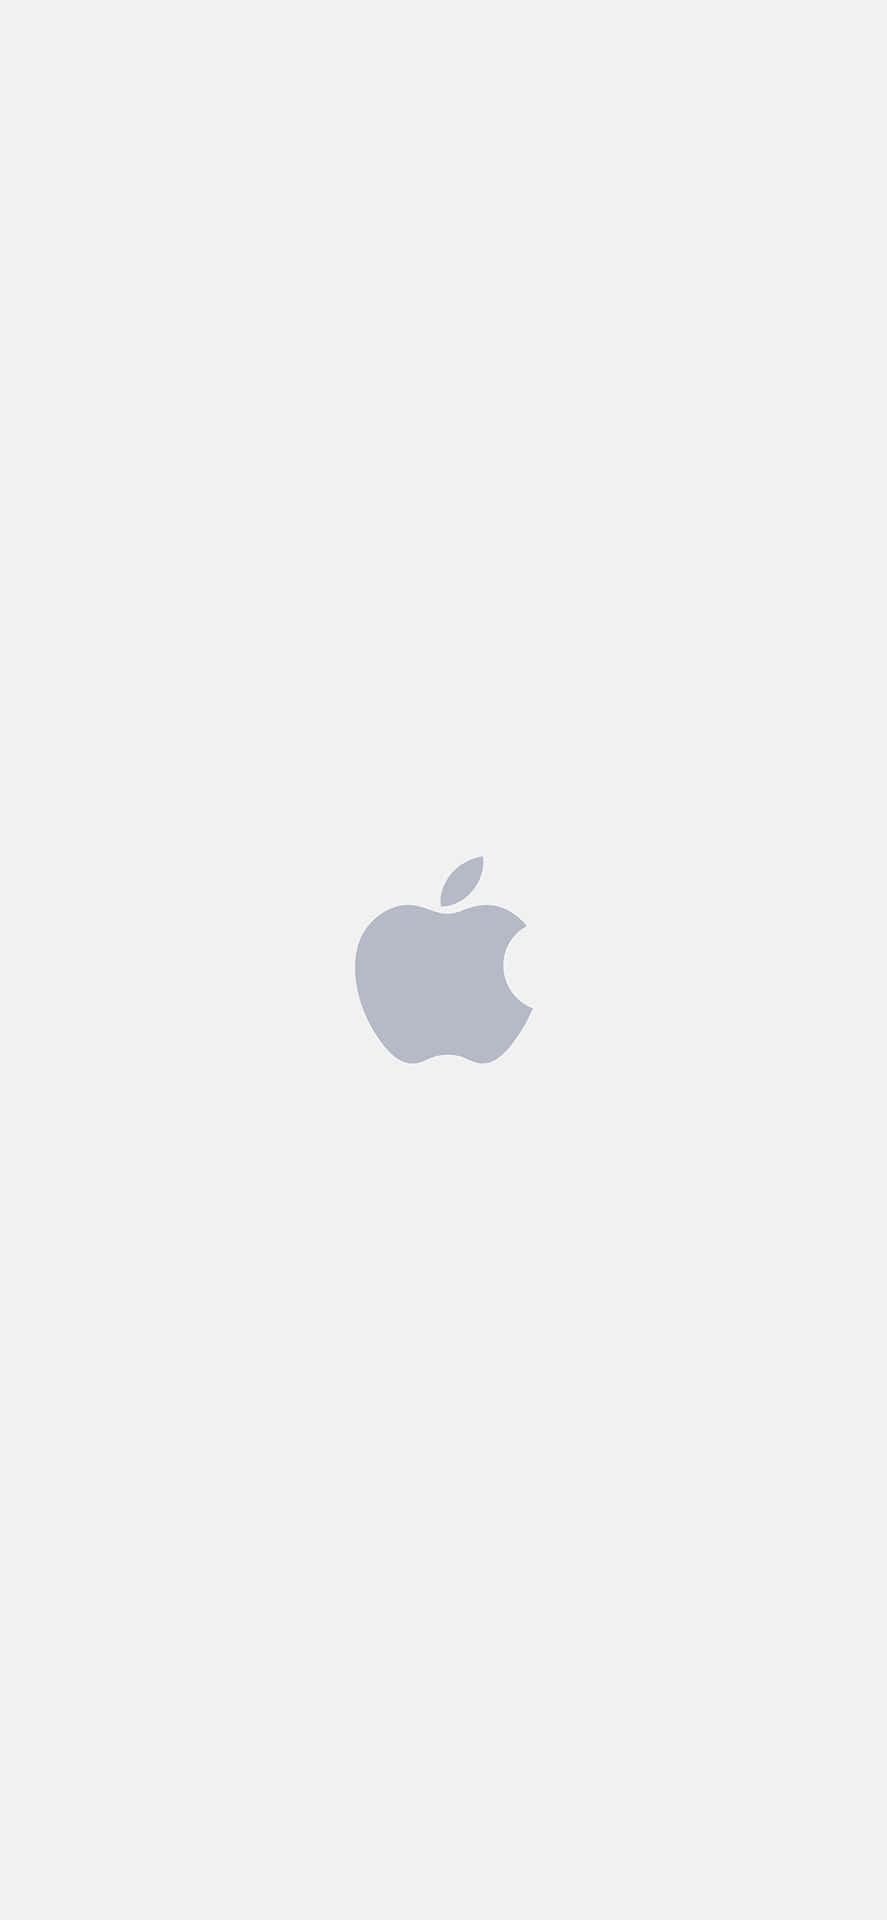 Logogrigio Di Apple Per Iphone X Sfondo